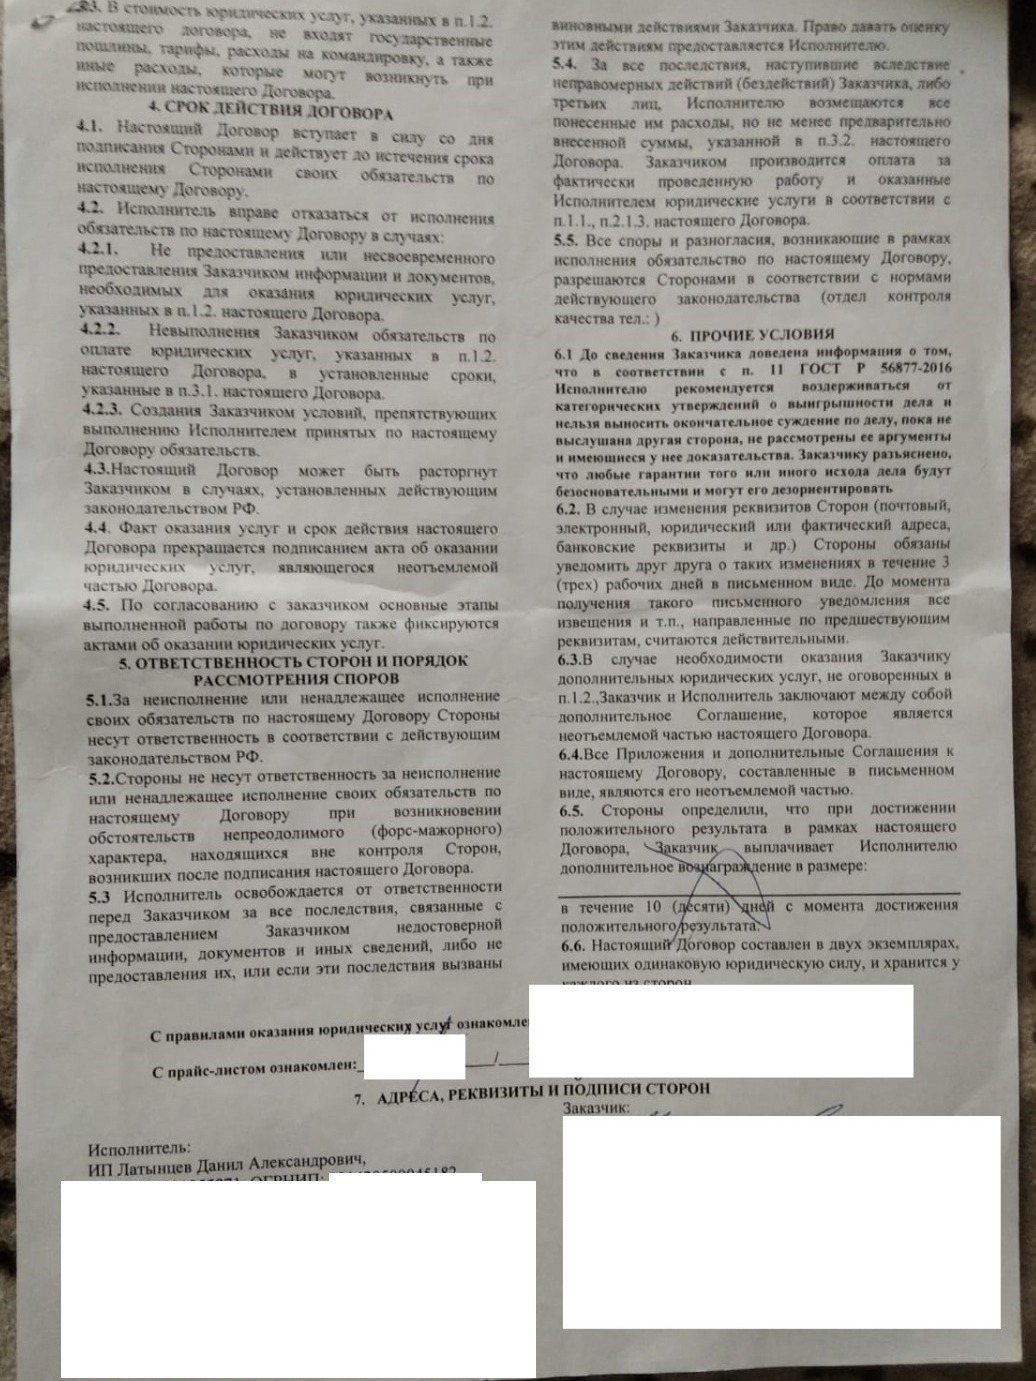 Юрий заключил с юристами договор в общей сложности на 60 тысяч рублей.